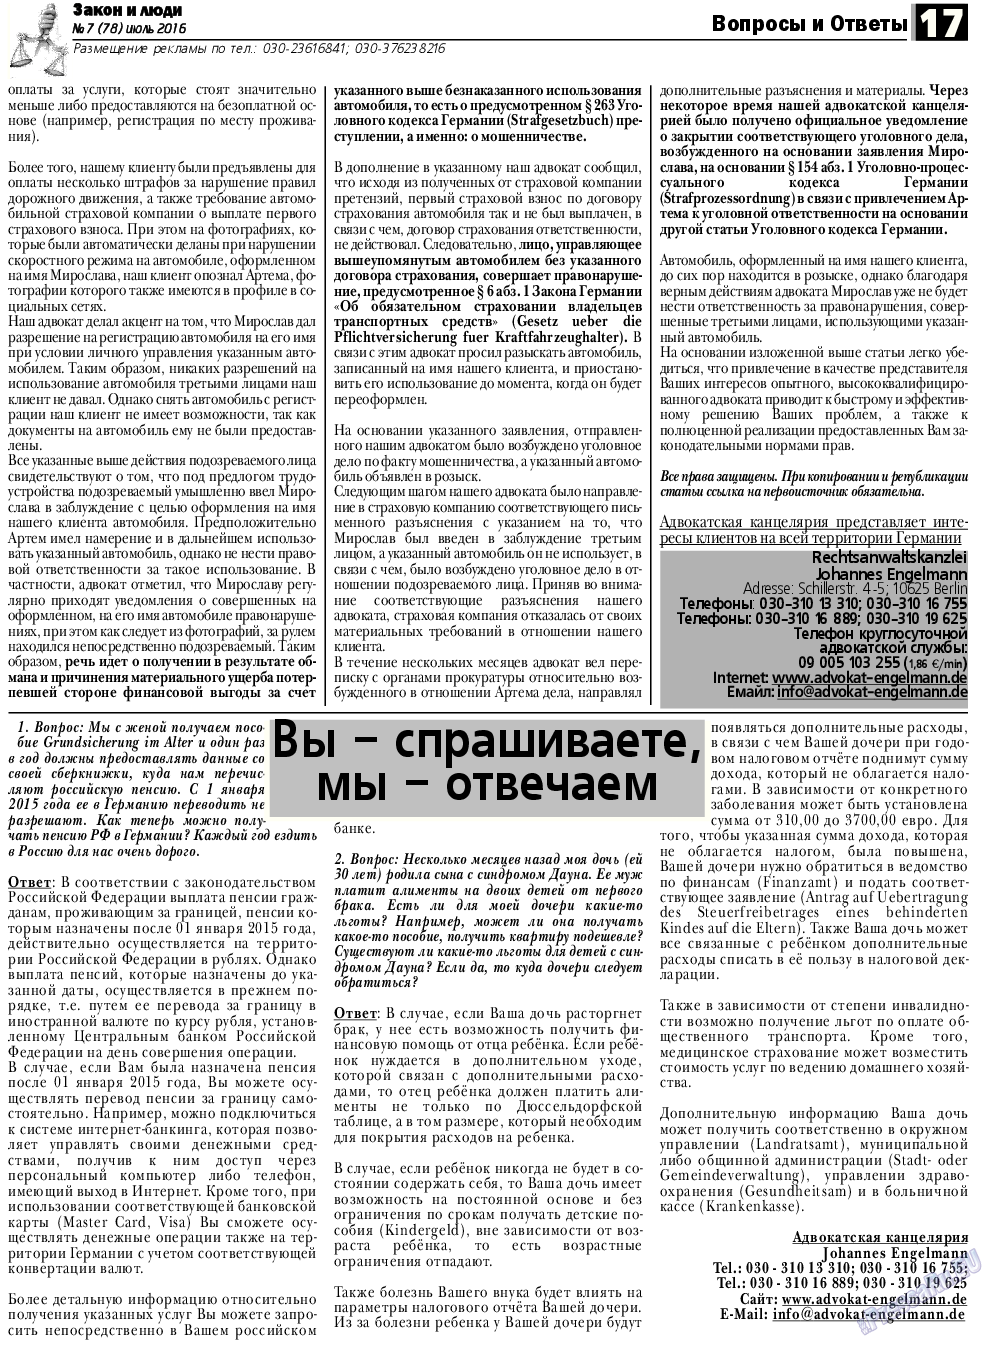 Закон и люди, газета. 2016 №7 стр.17